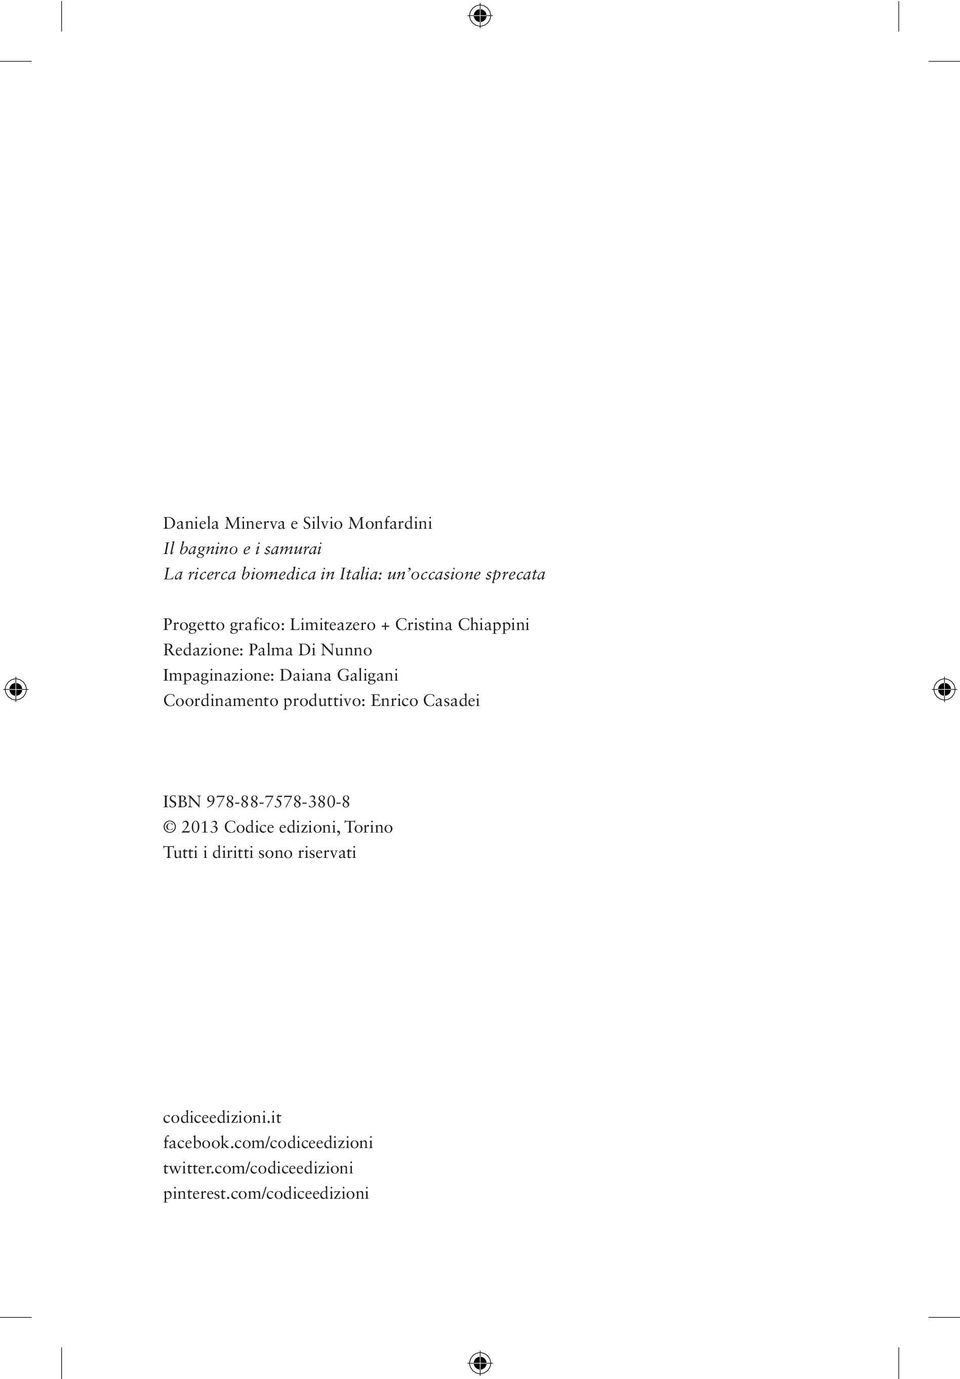 Galigani Coordinamento produttivo: Enrico Casadei ISBN 978-88-7578-380-8 2013 Codice edizioni, Torino Tutti i